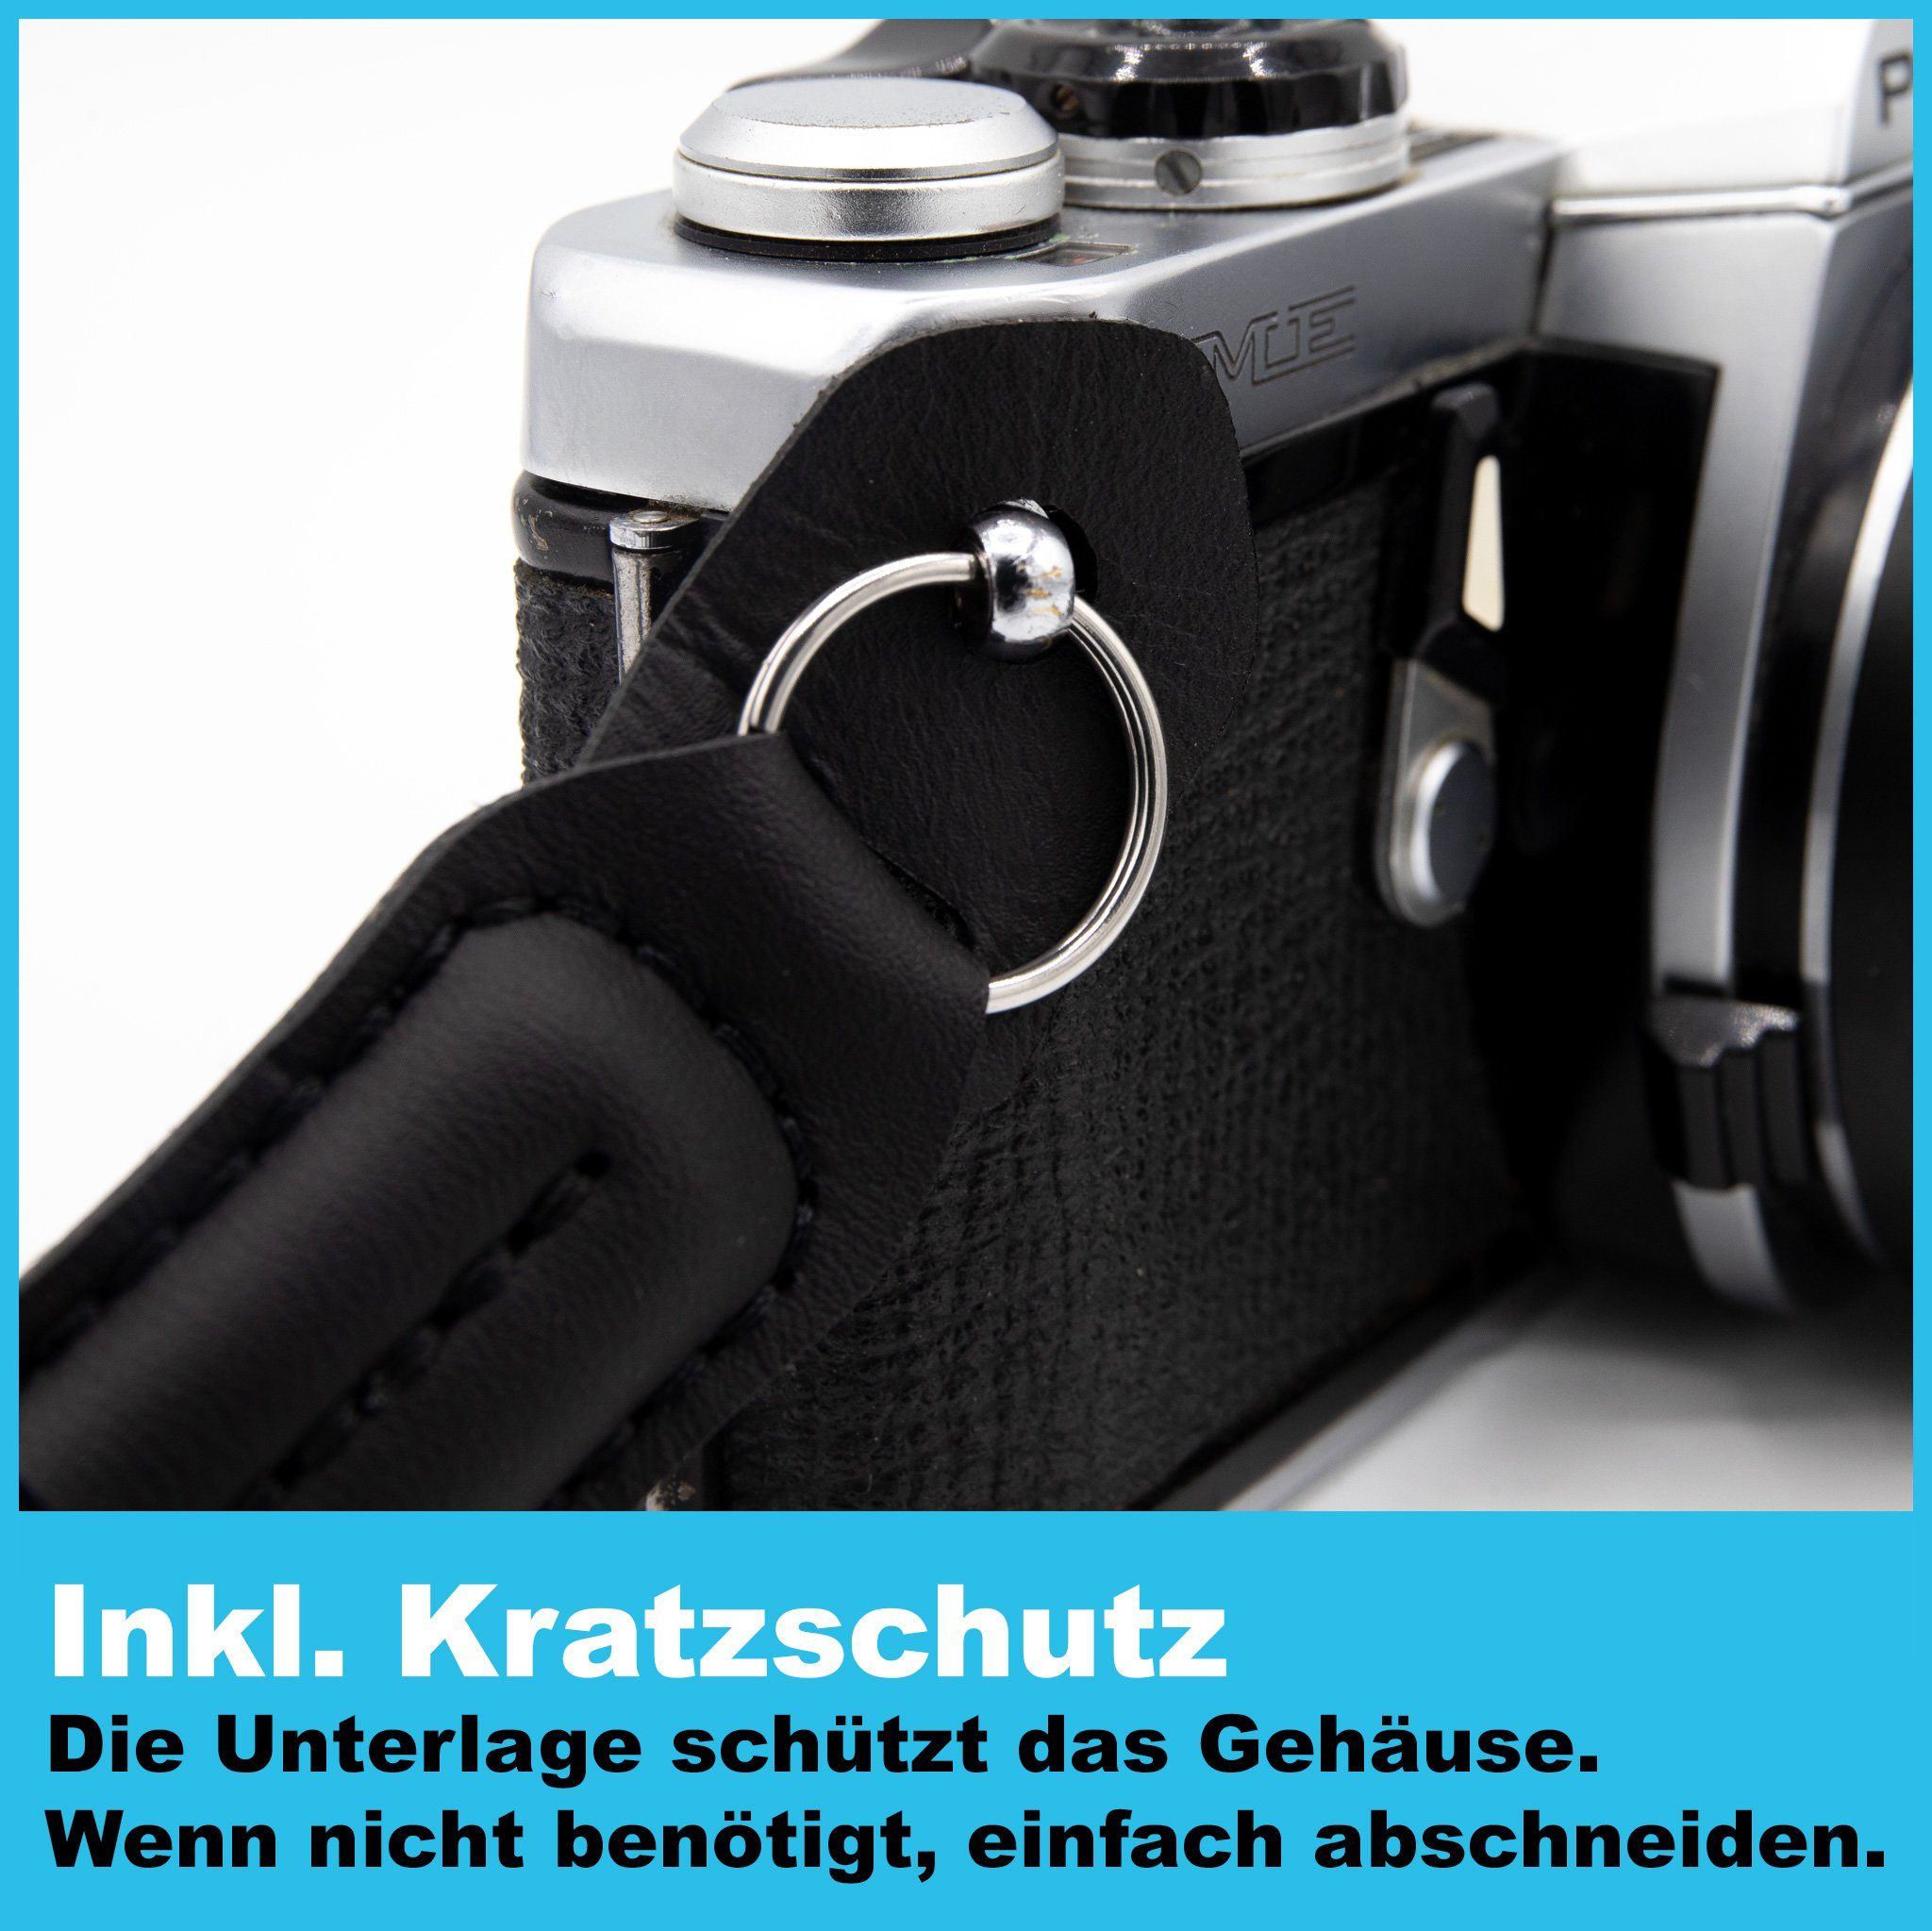 Kameragurt Schwarz Schultergurt Seil: Nacken- aus für Lens-Aid Kamerazubehör-Set BZW. Systemkamera, DSLR